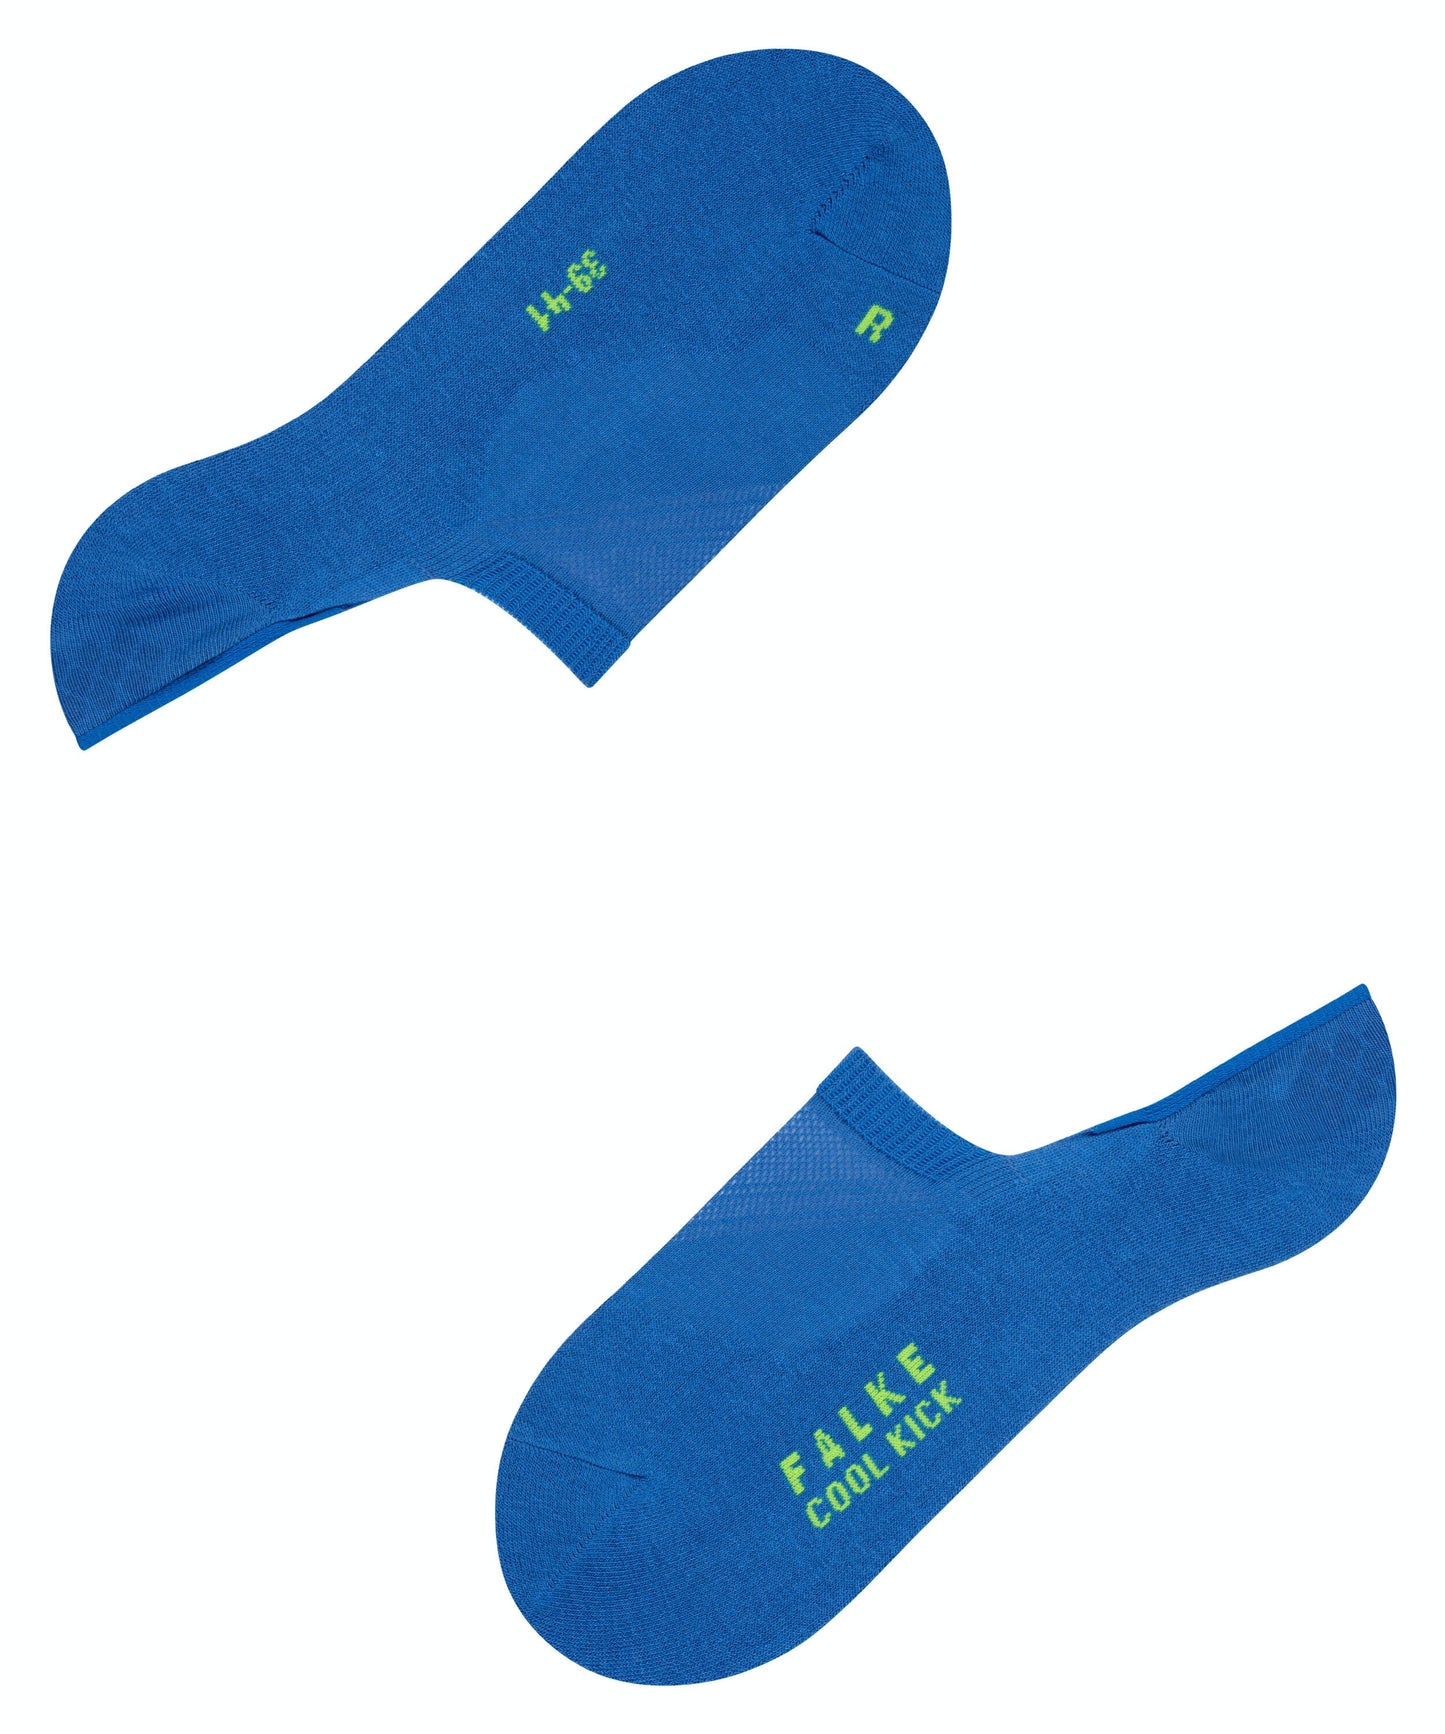 FALKE COOL KICK Invisible Socks in Blue